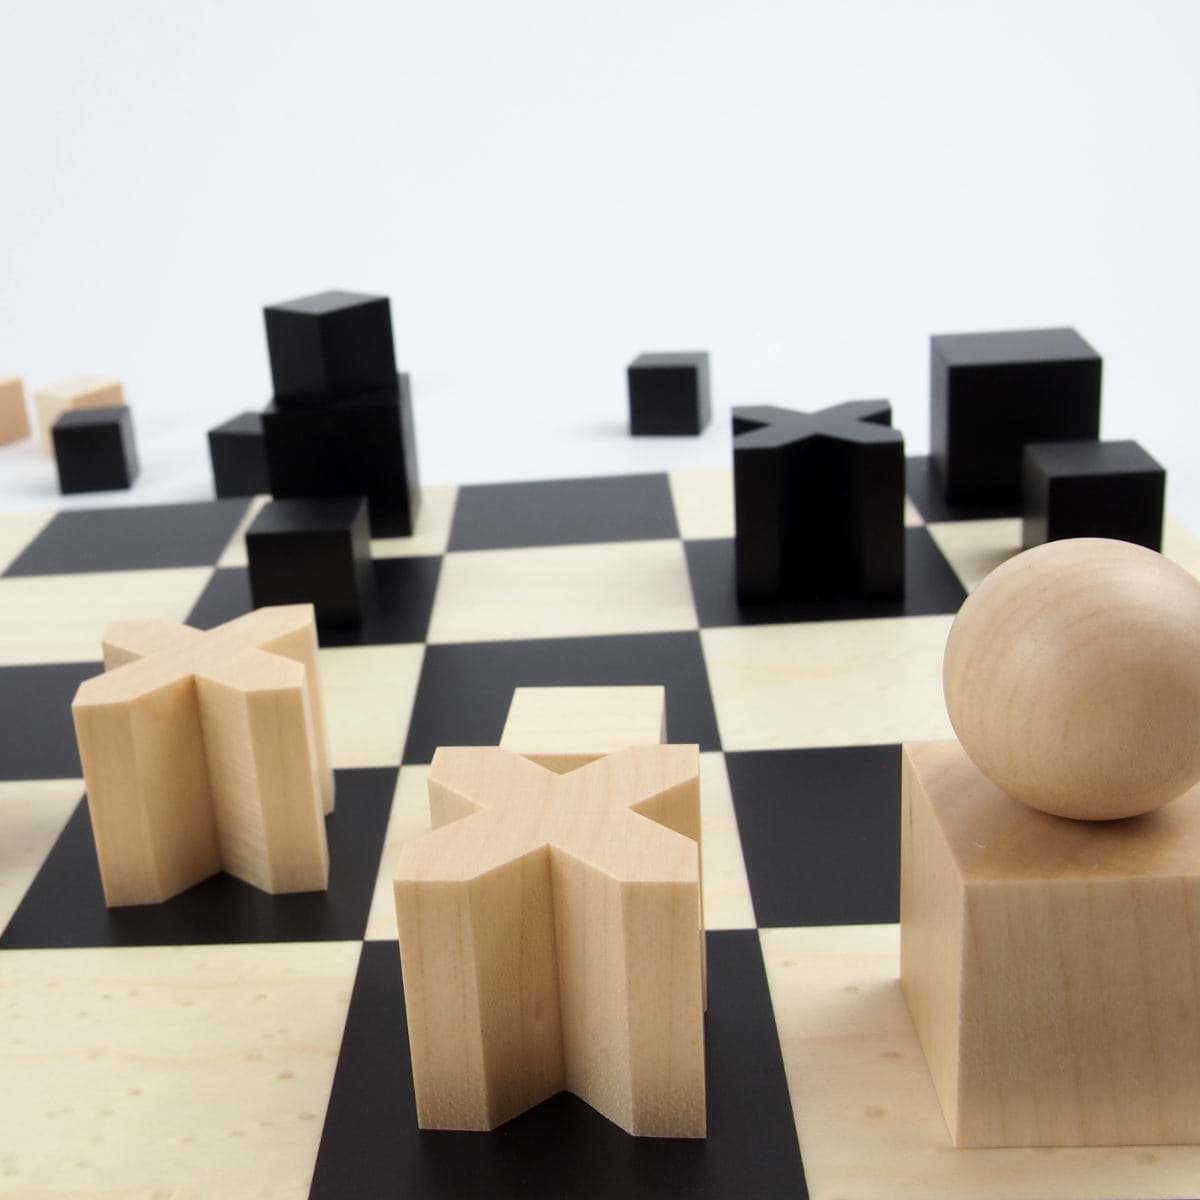 תמונה של לוח שחמט של באוהאוס